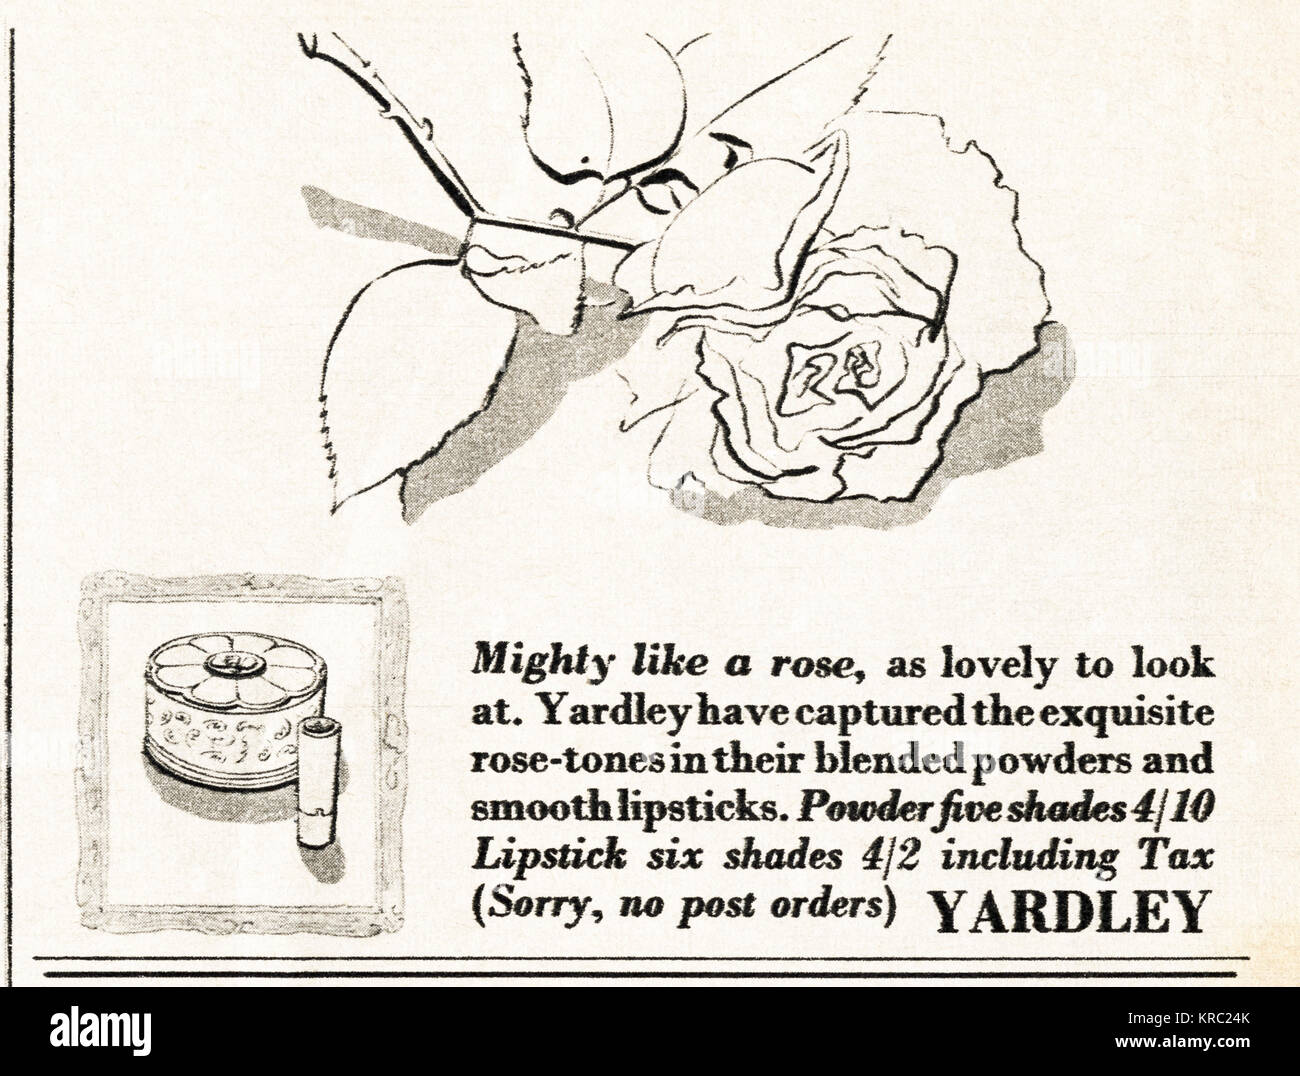 1940s vecchio vintage originale pubblicità pubblicità Yardley cosmetici nella rivista circa 1947 quando i materiali di consumo sono state ancora limitato sotto il razionamento del dopoguerra Foto Stock